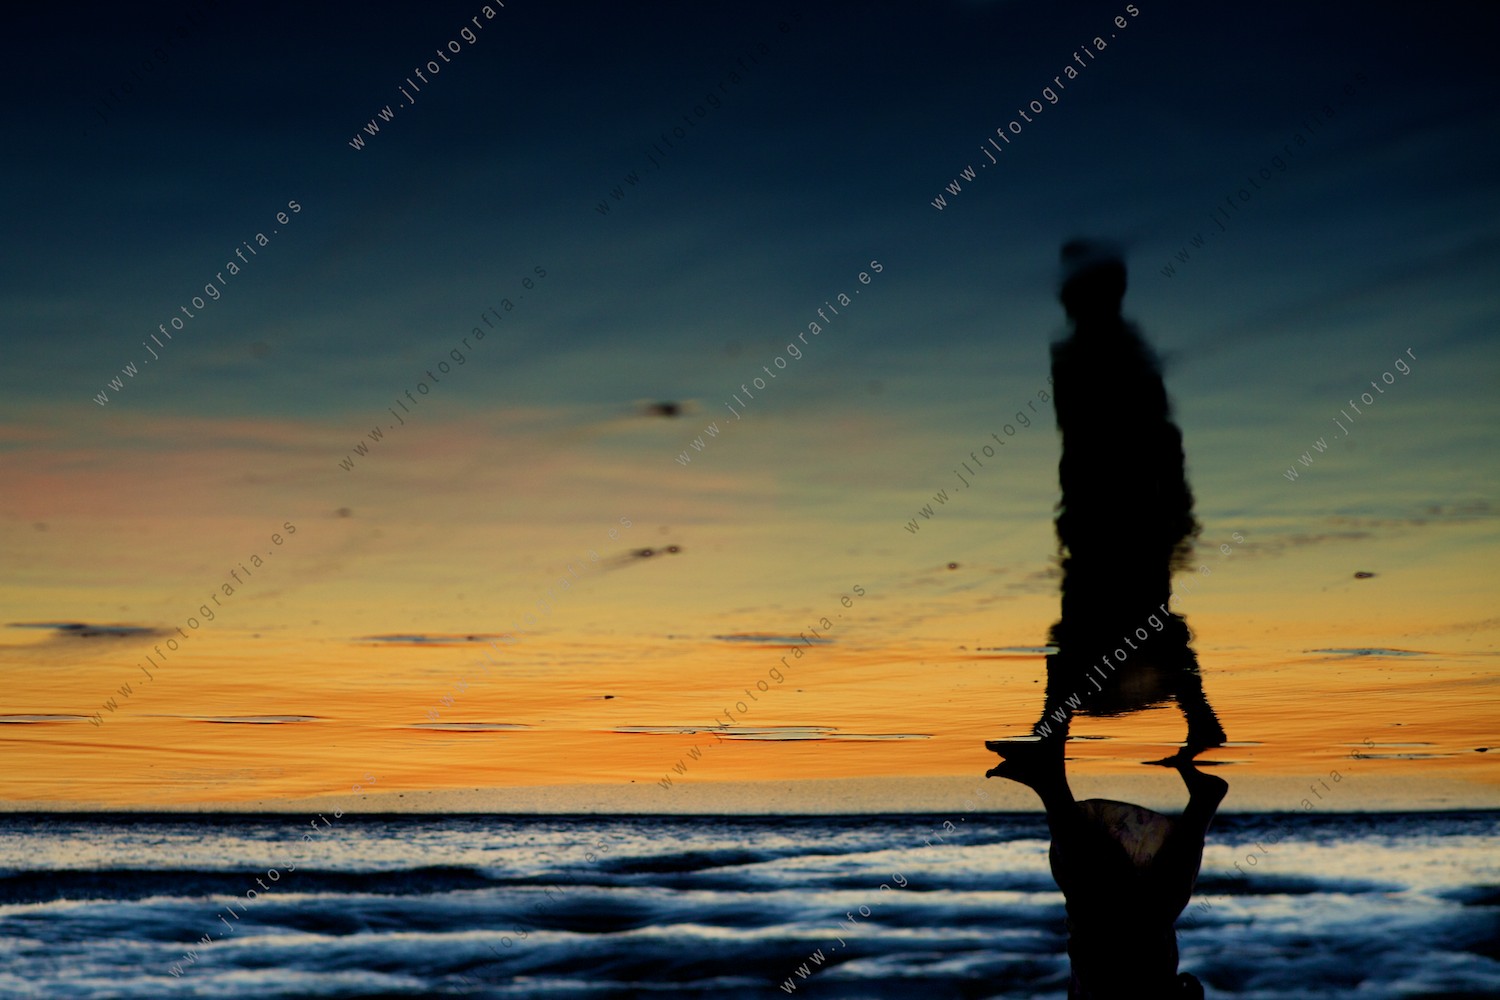 Los colores del crepúsculo, reflejados en la orilla de la playa juega con la silueta de una mujer que pasea.